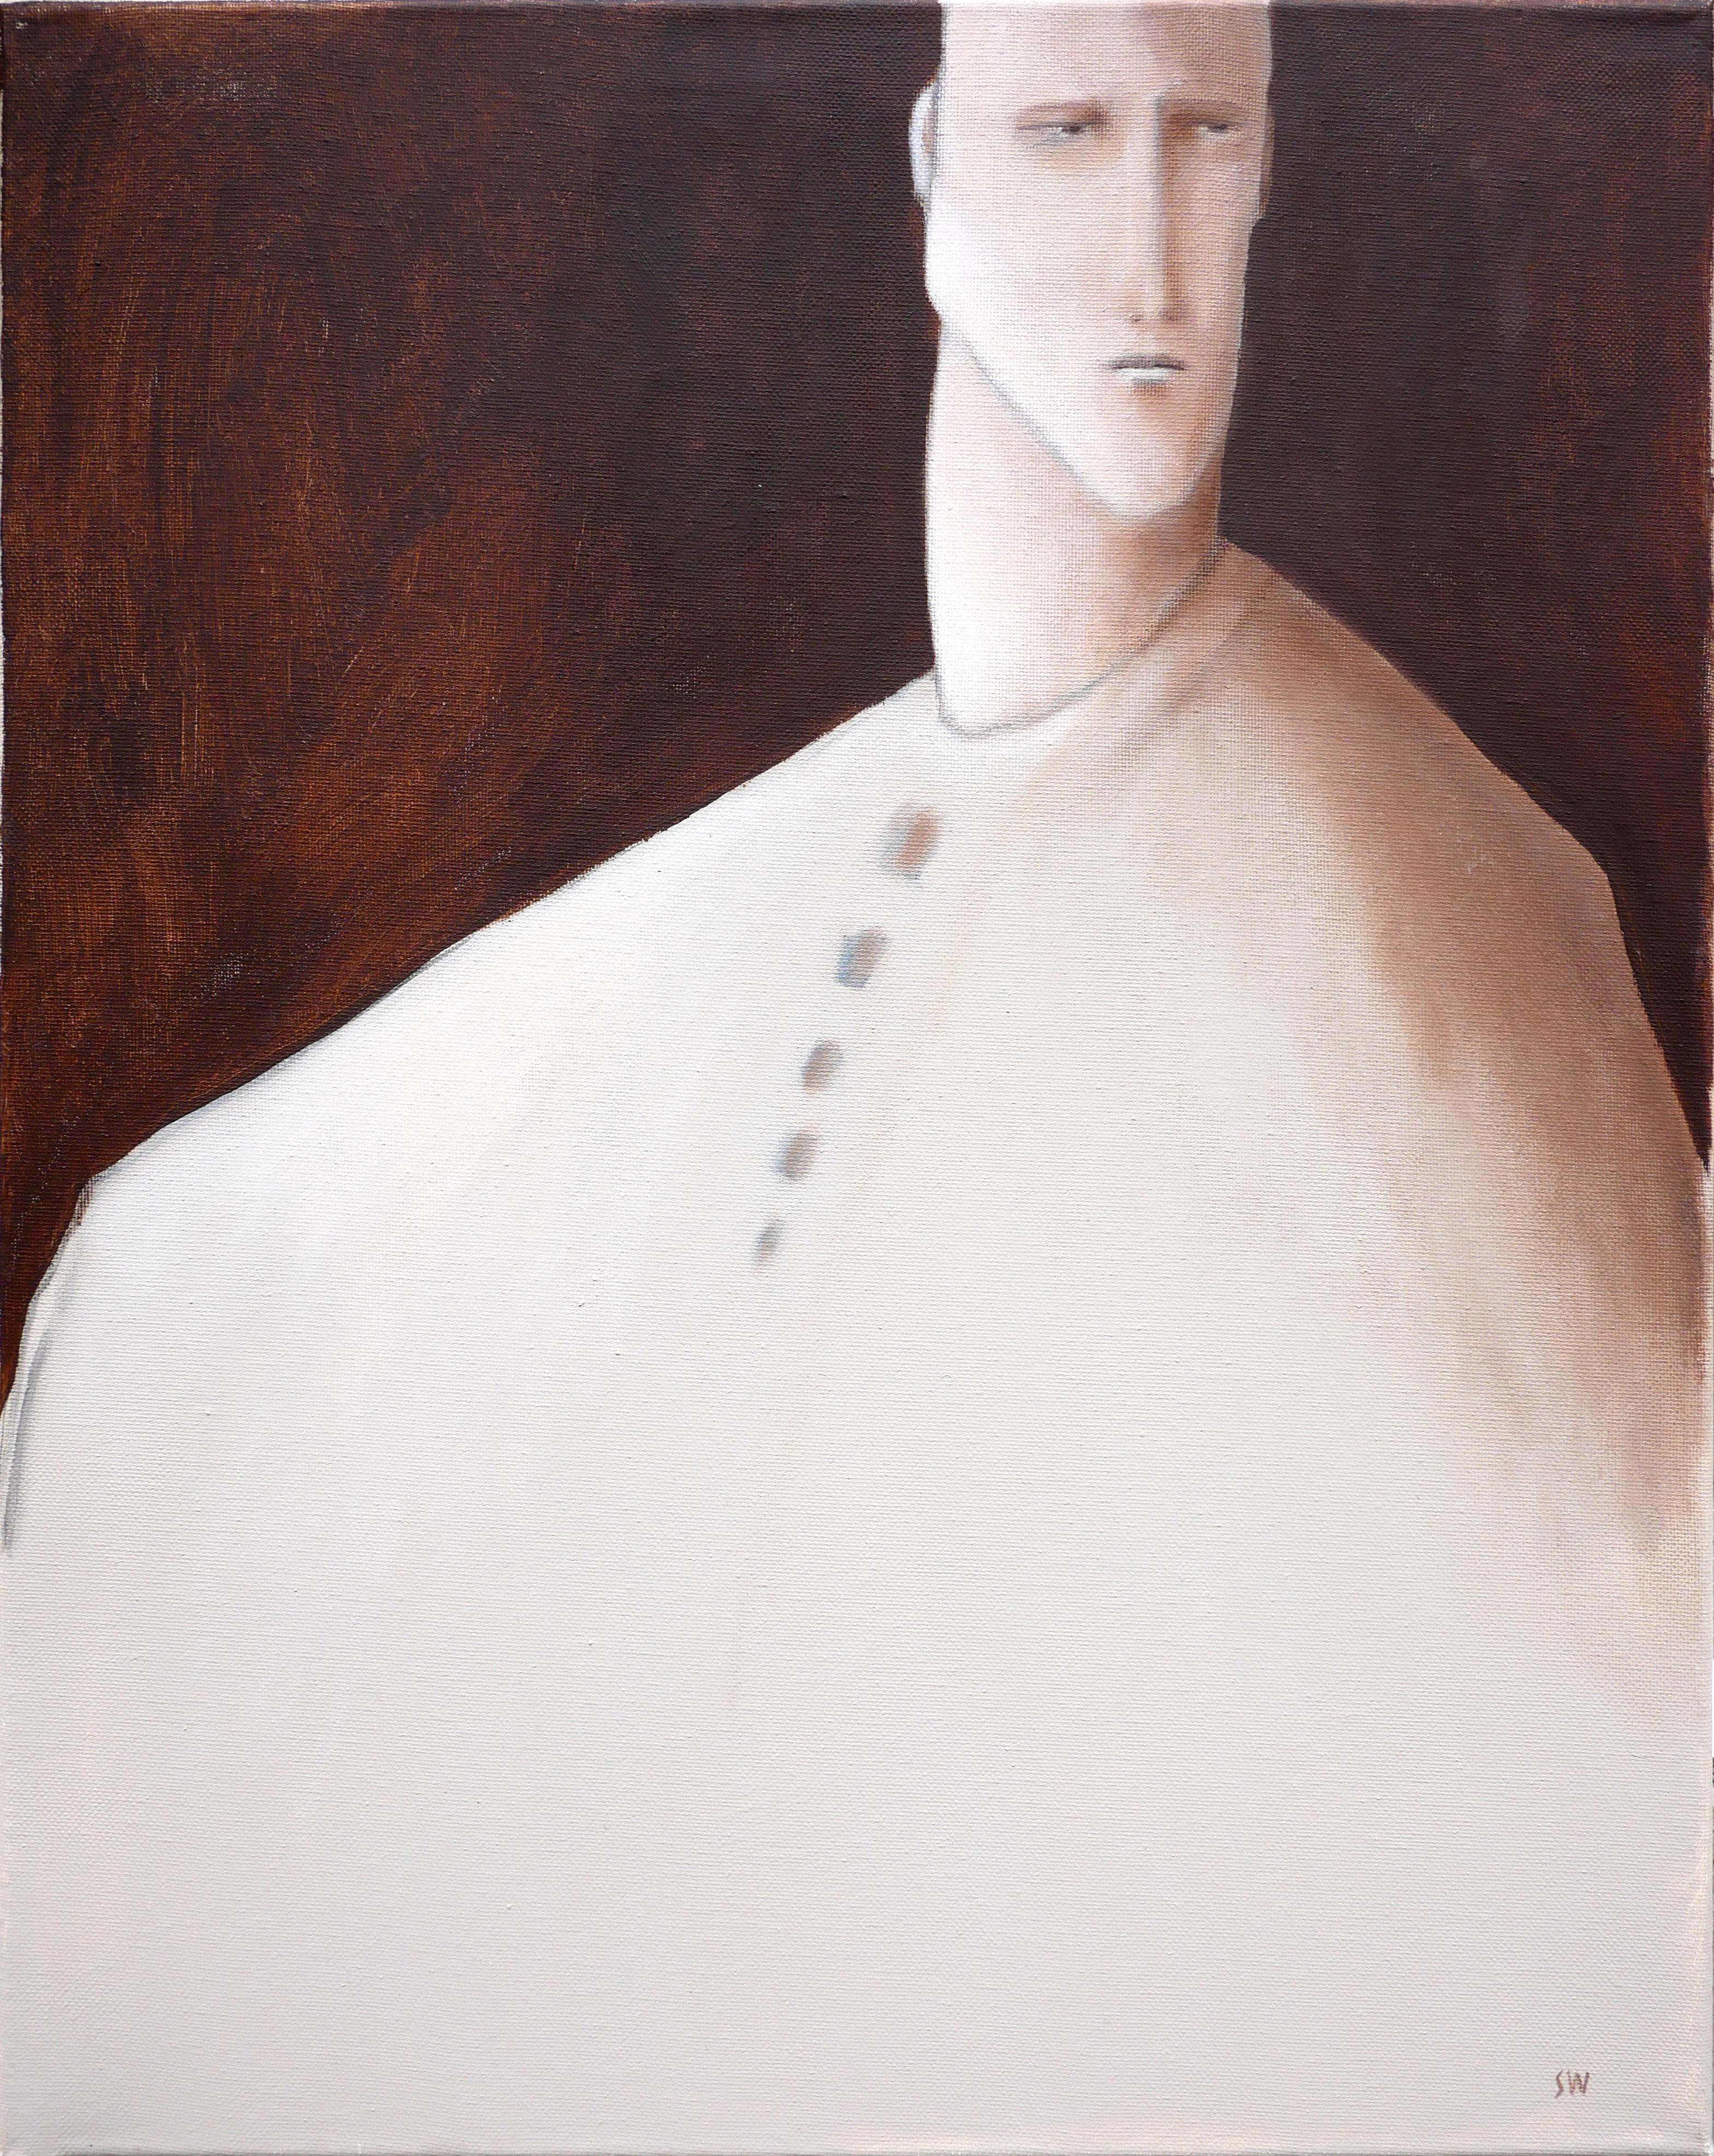 Figurative Painting Scott Woodard - Peinture surréaliste contemporaine monochrome de type « V » d'un homme aux tons bruns